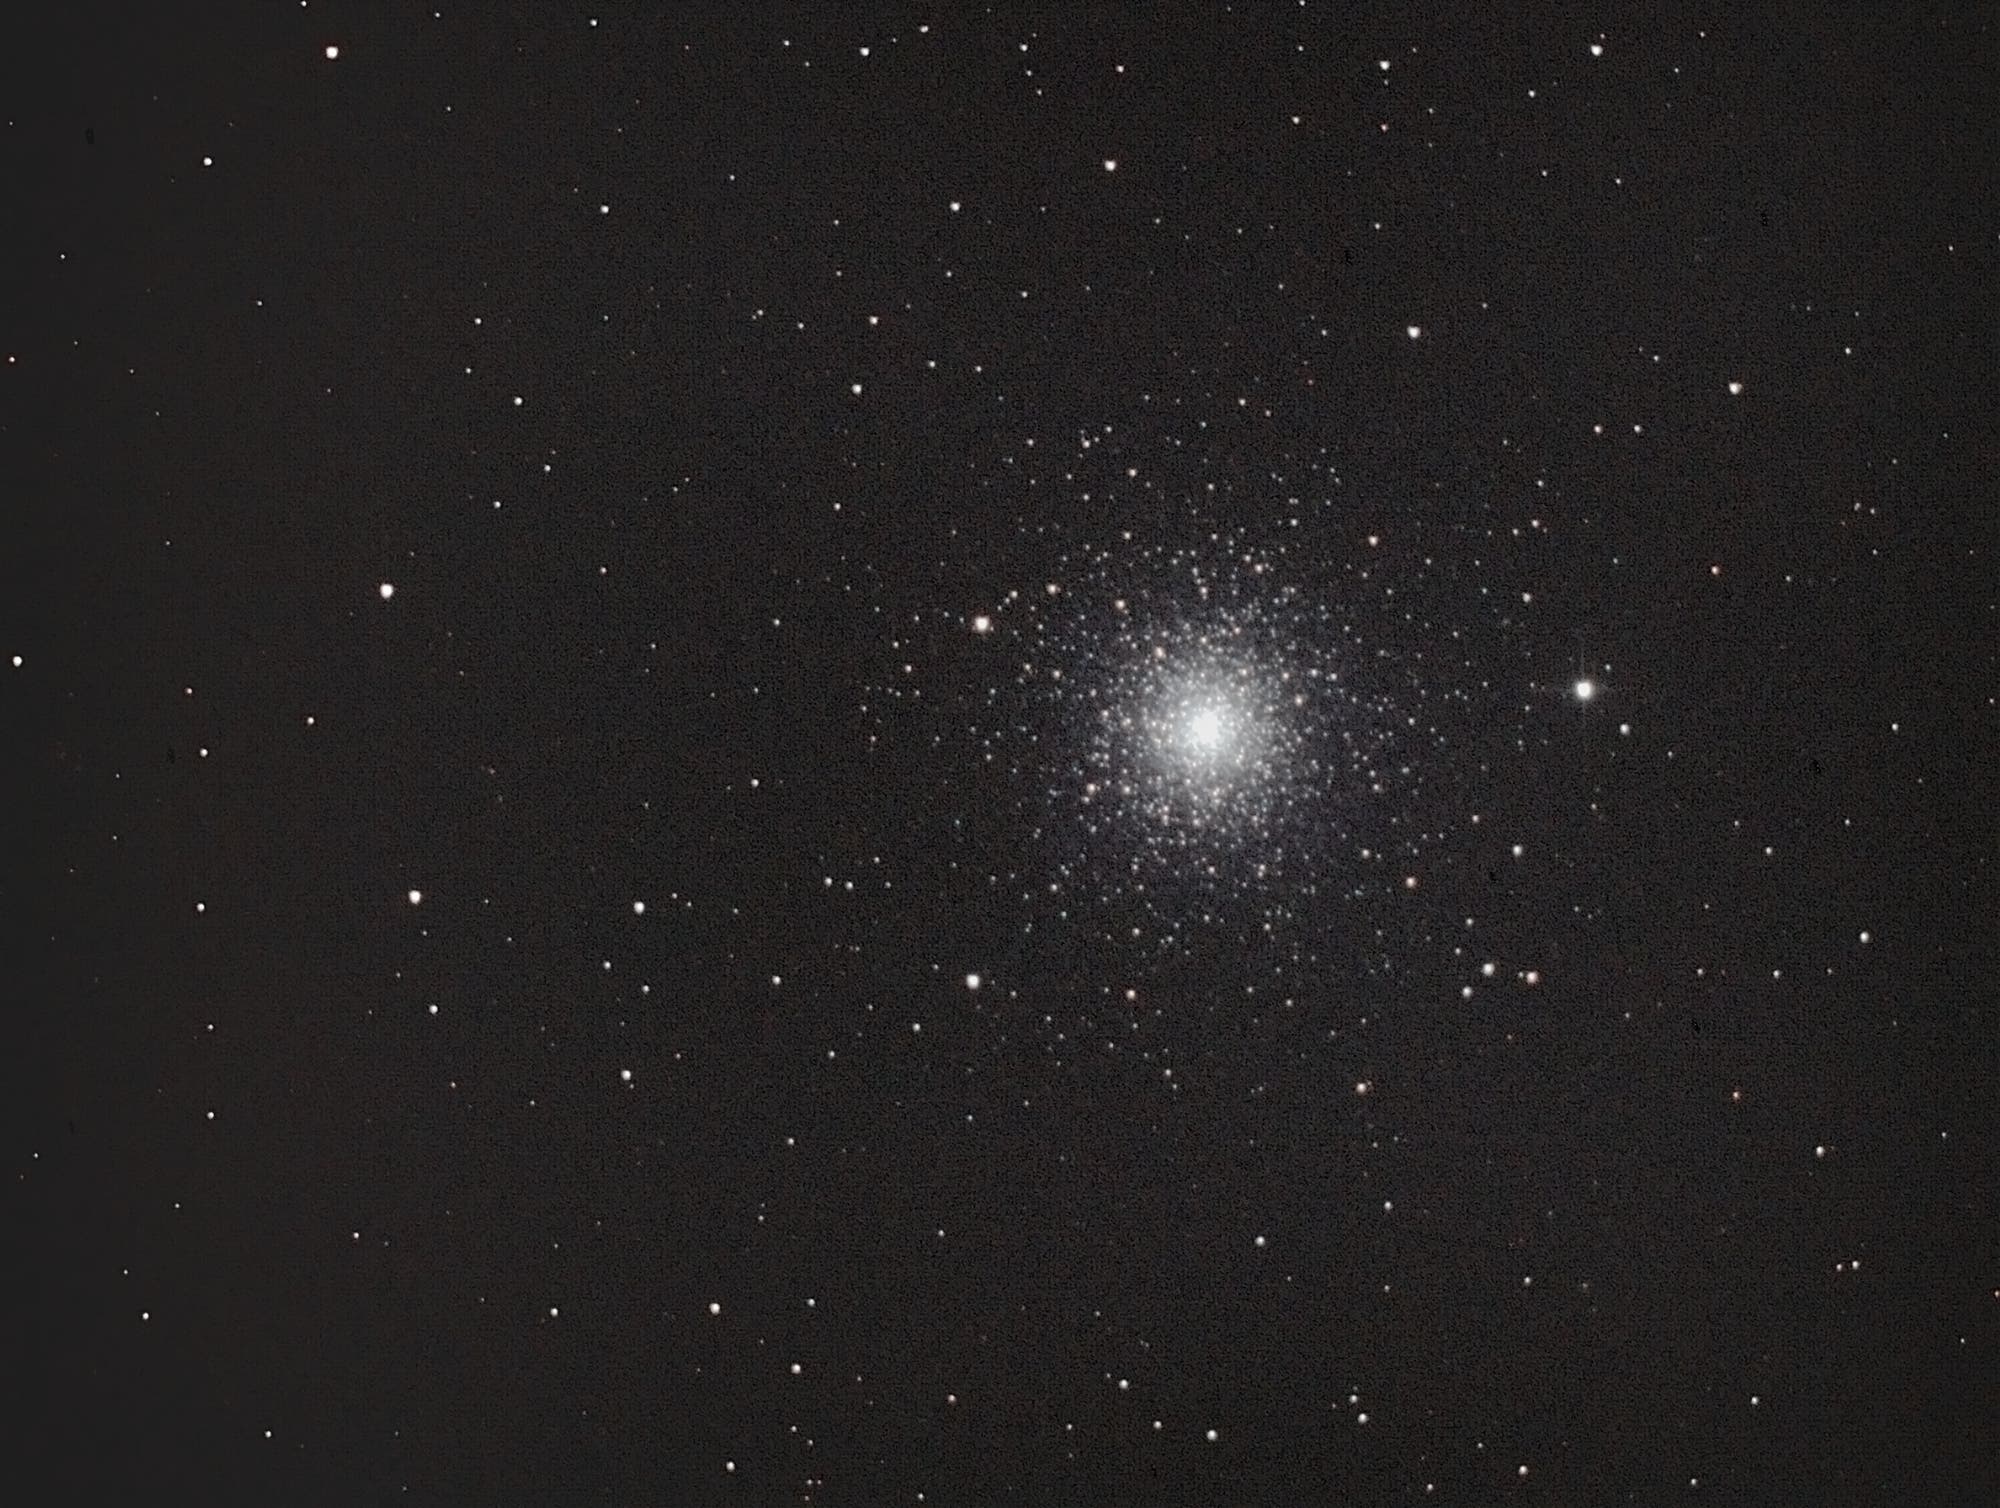 Kugelsternhaufen Messier 3 im Sternbild Jagdhunde (Canes Venatici)